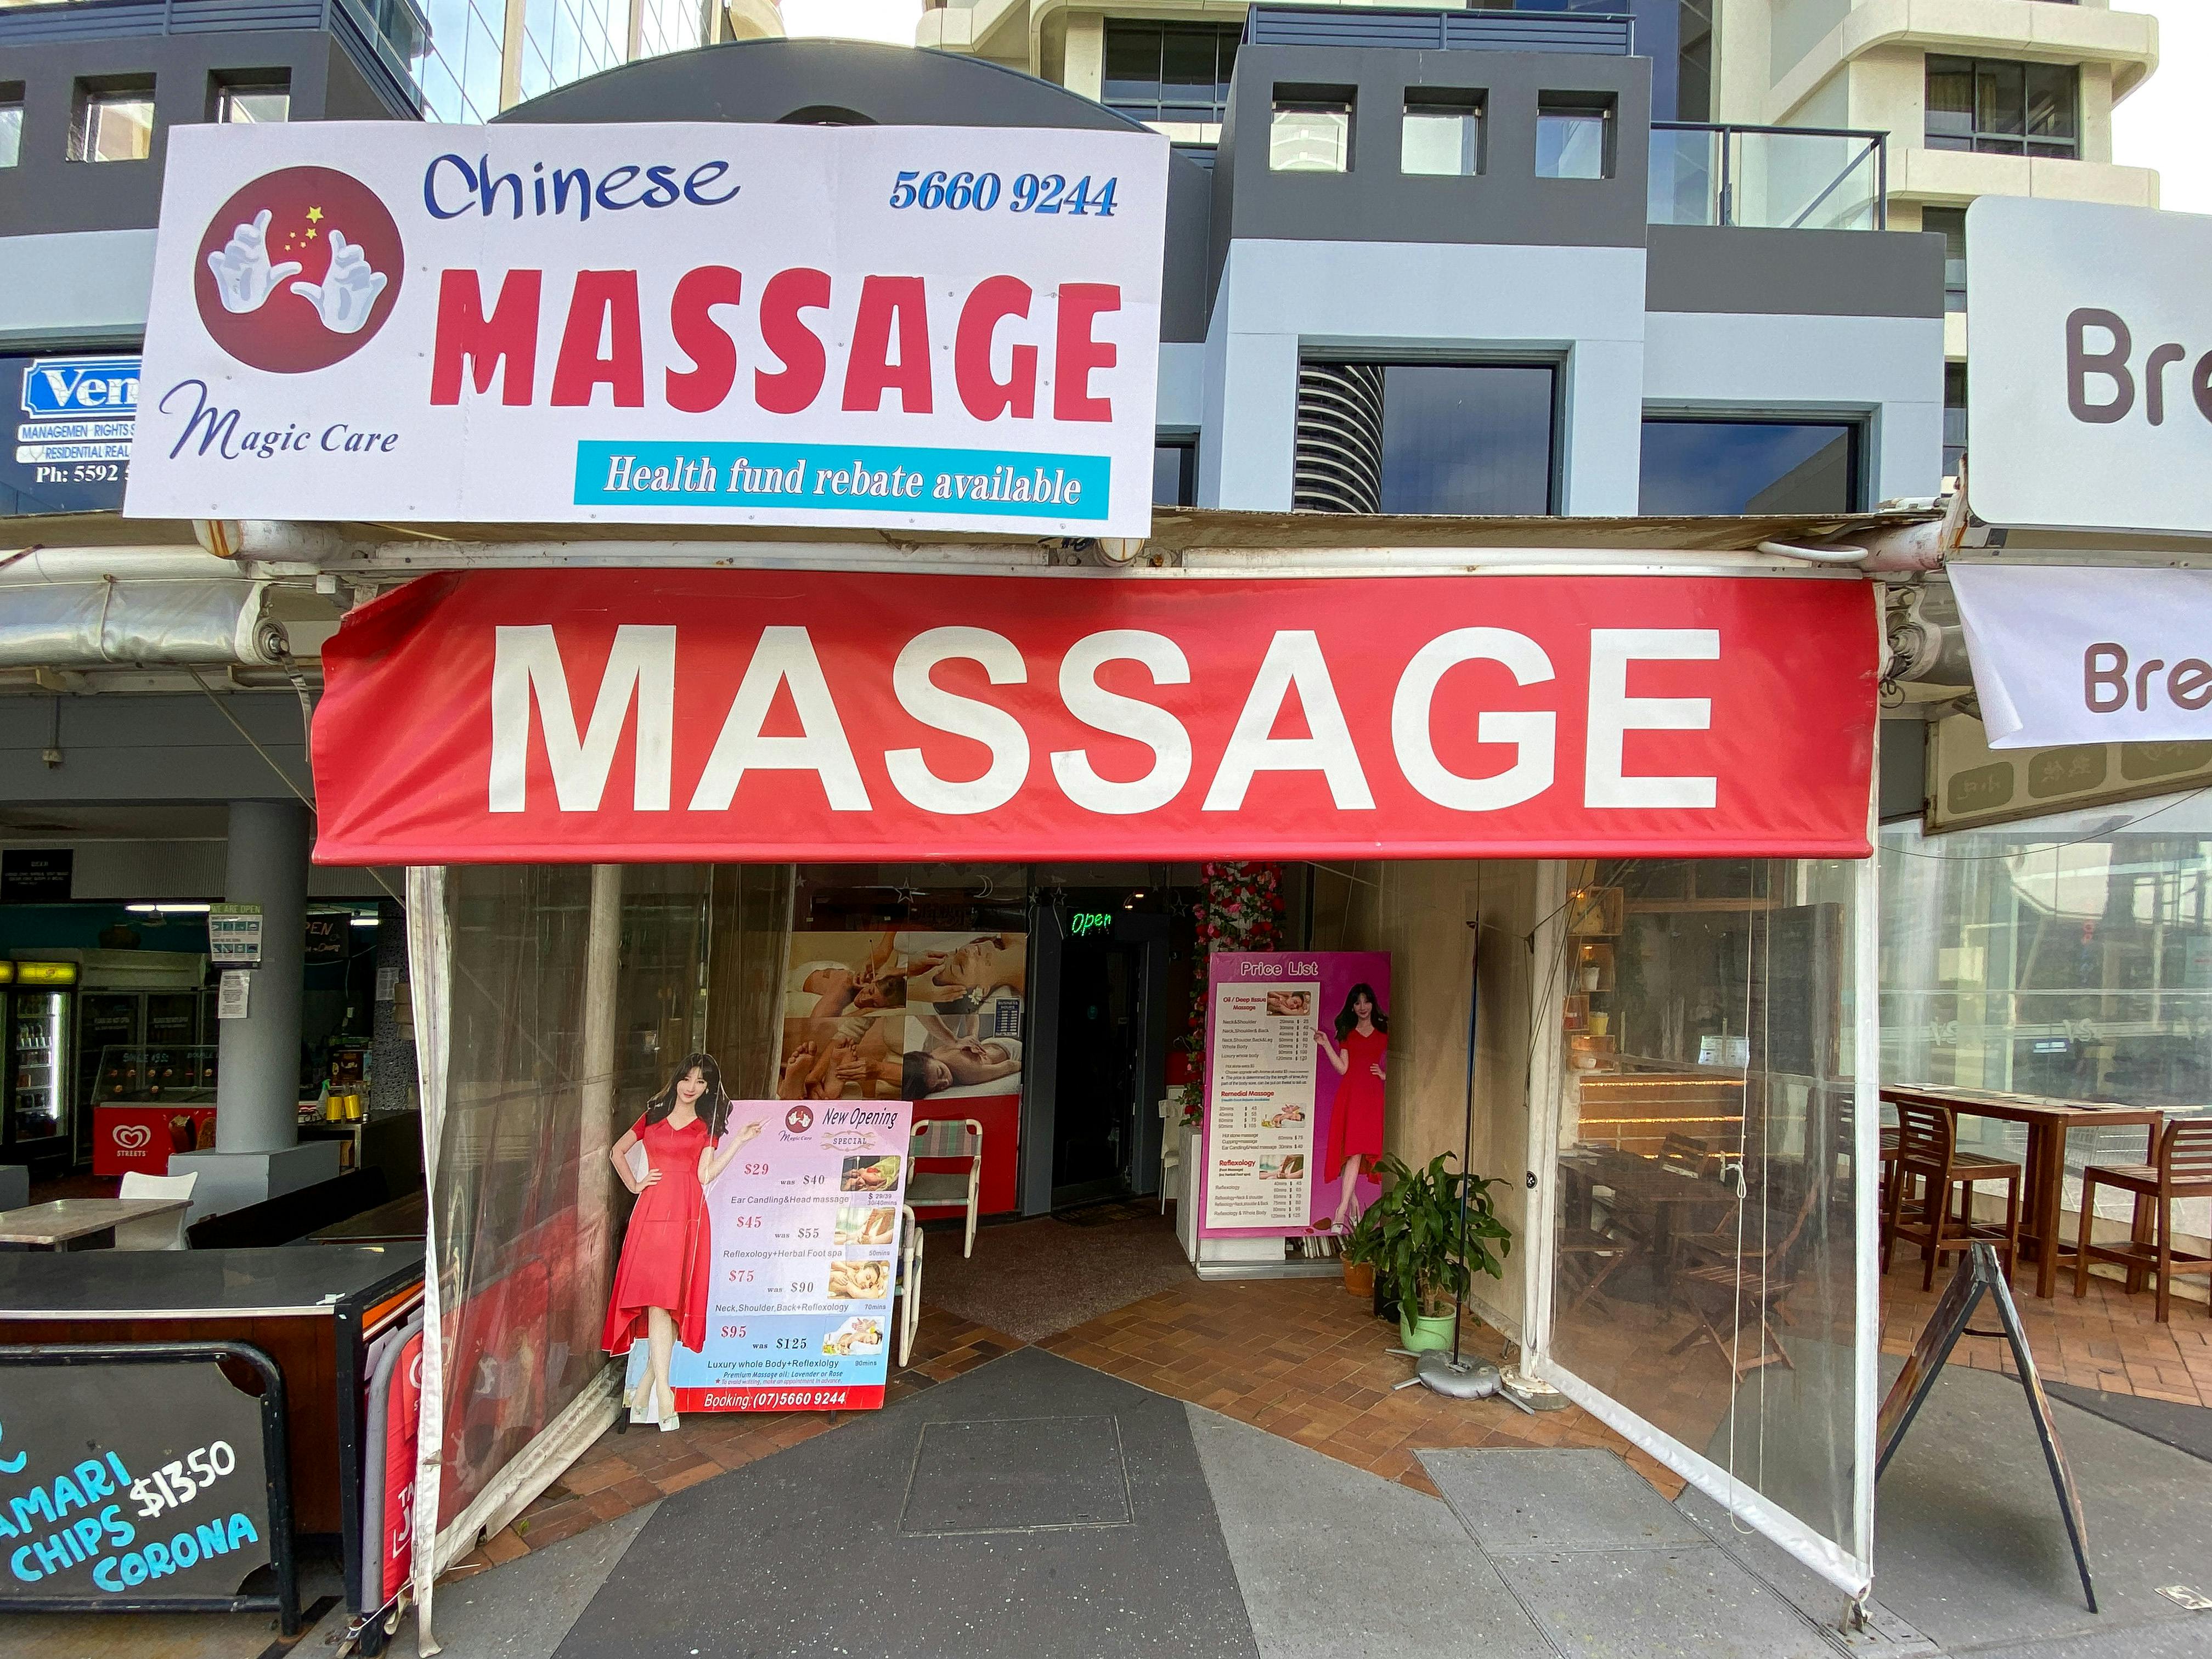 Magic Care Massage Broadbeach Massage Body Massage Bookwell